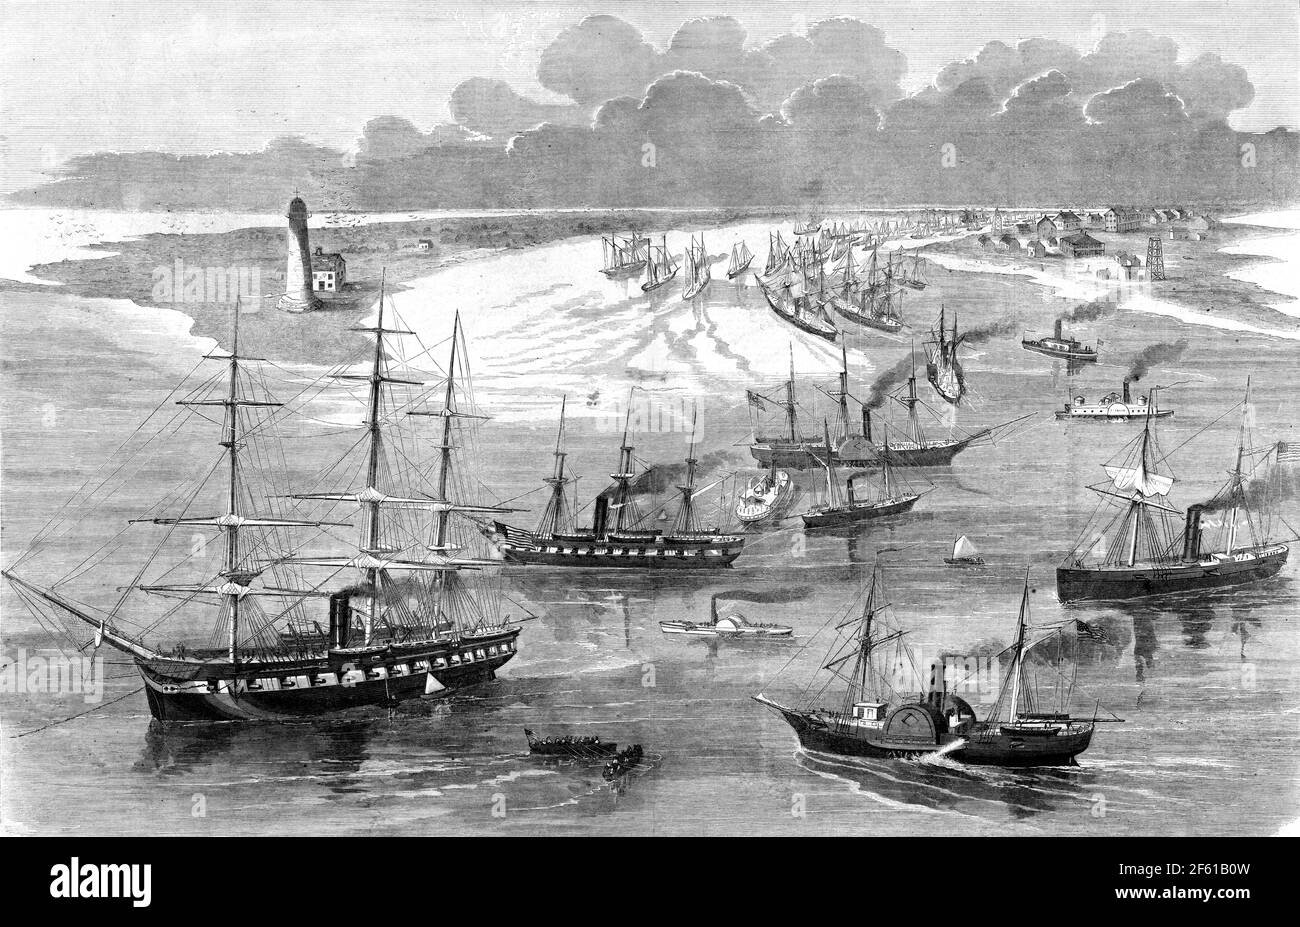 Union Squadron of Battleships and Ironclads, 1862 Stockfotografie - Alamy